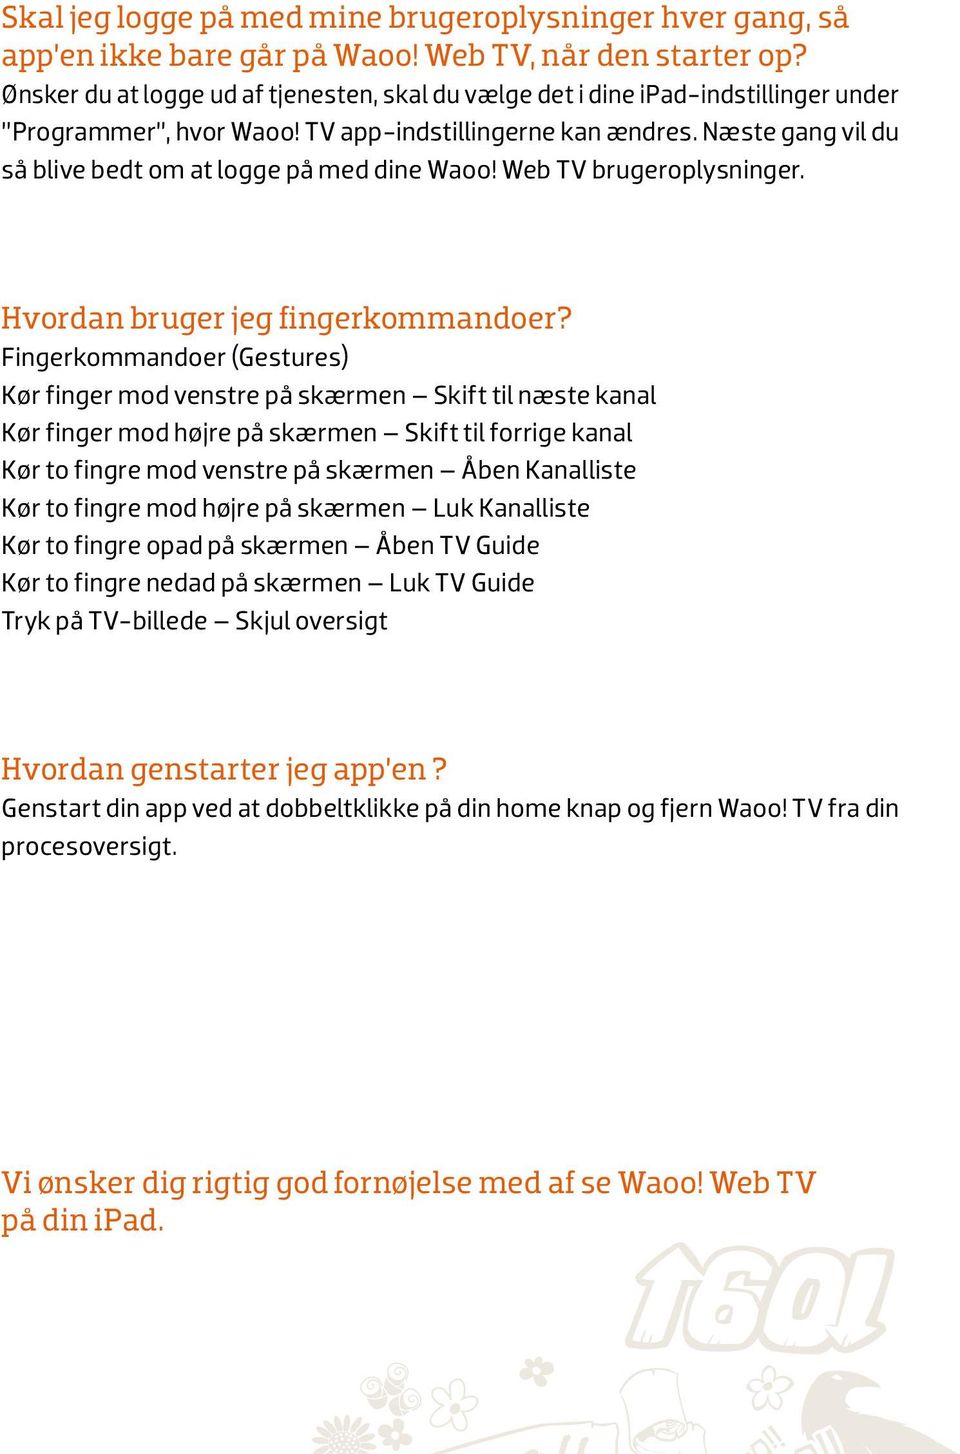 Næste gang vil du så blive bedt om at logge på med dine Waoo! Web TV brugeroplysninger. Hvordan bruger jeg fingerkommandoer?